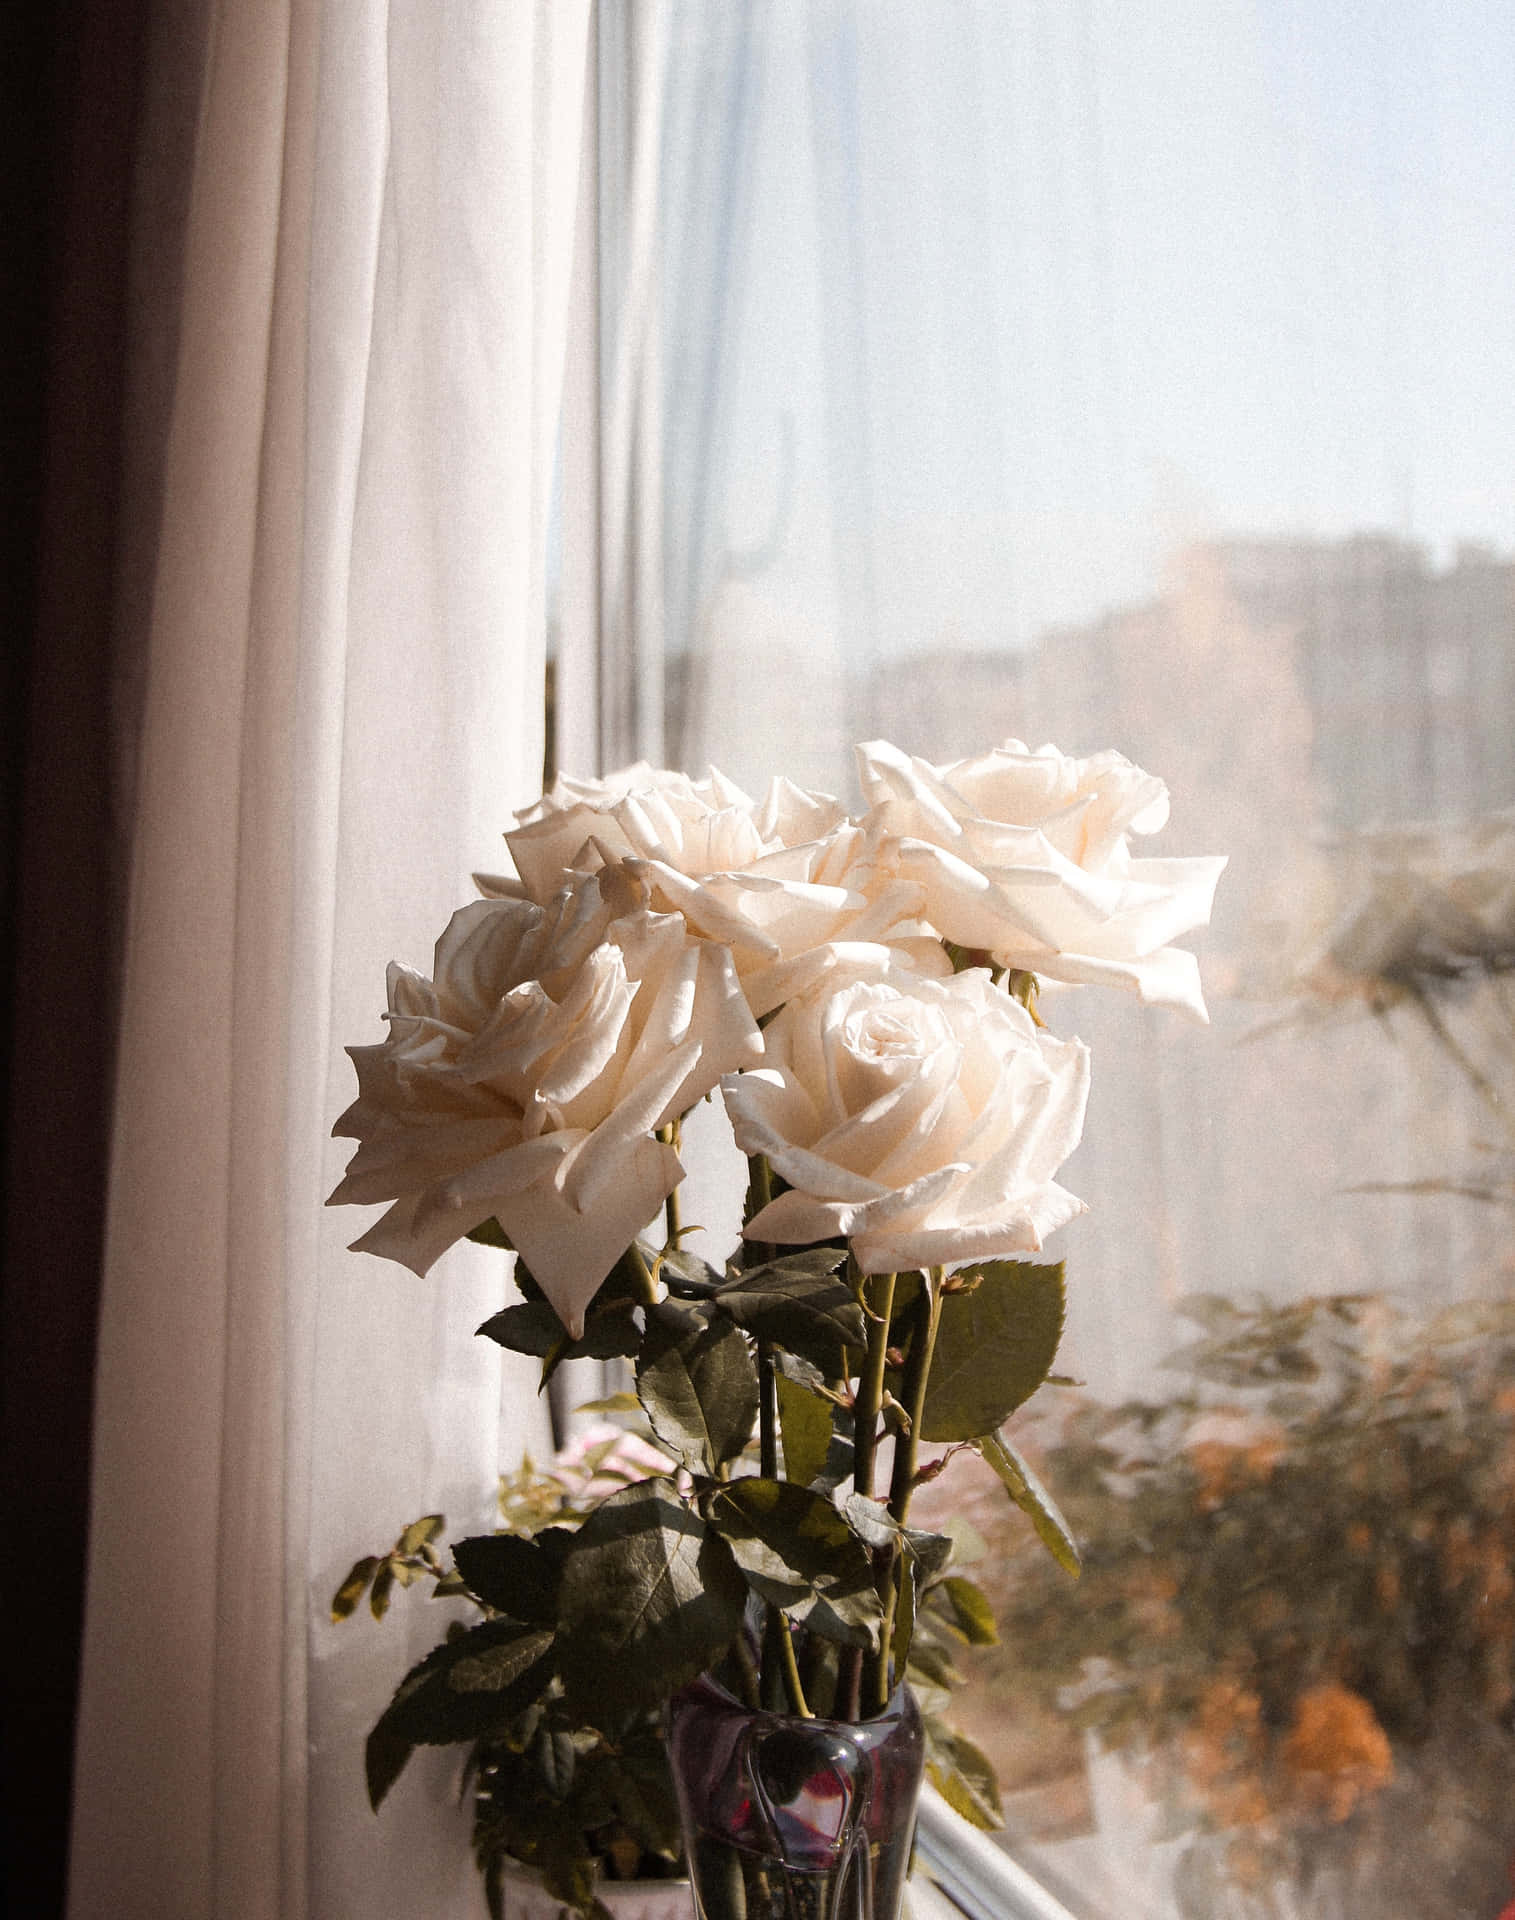 Fondode Pantalla De Ventanas Con Rosas Blancas De Estética En Retrato